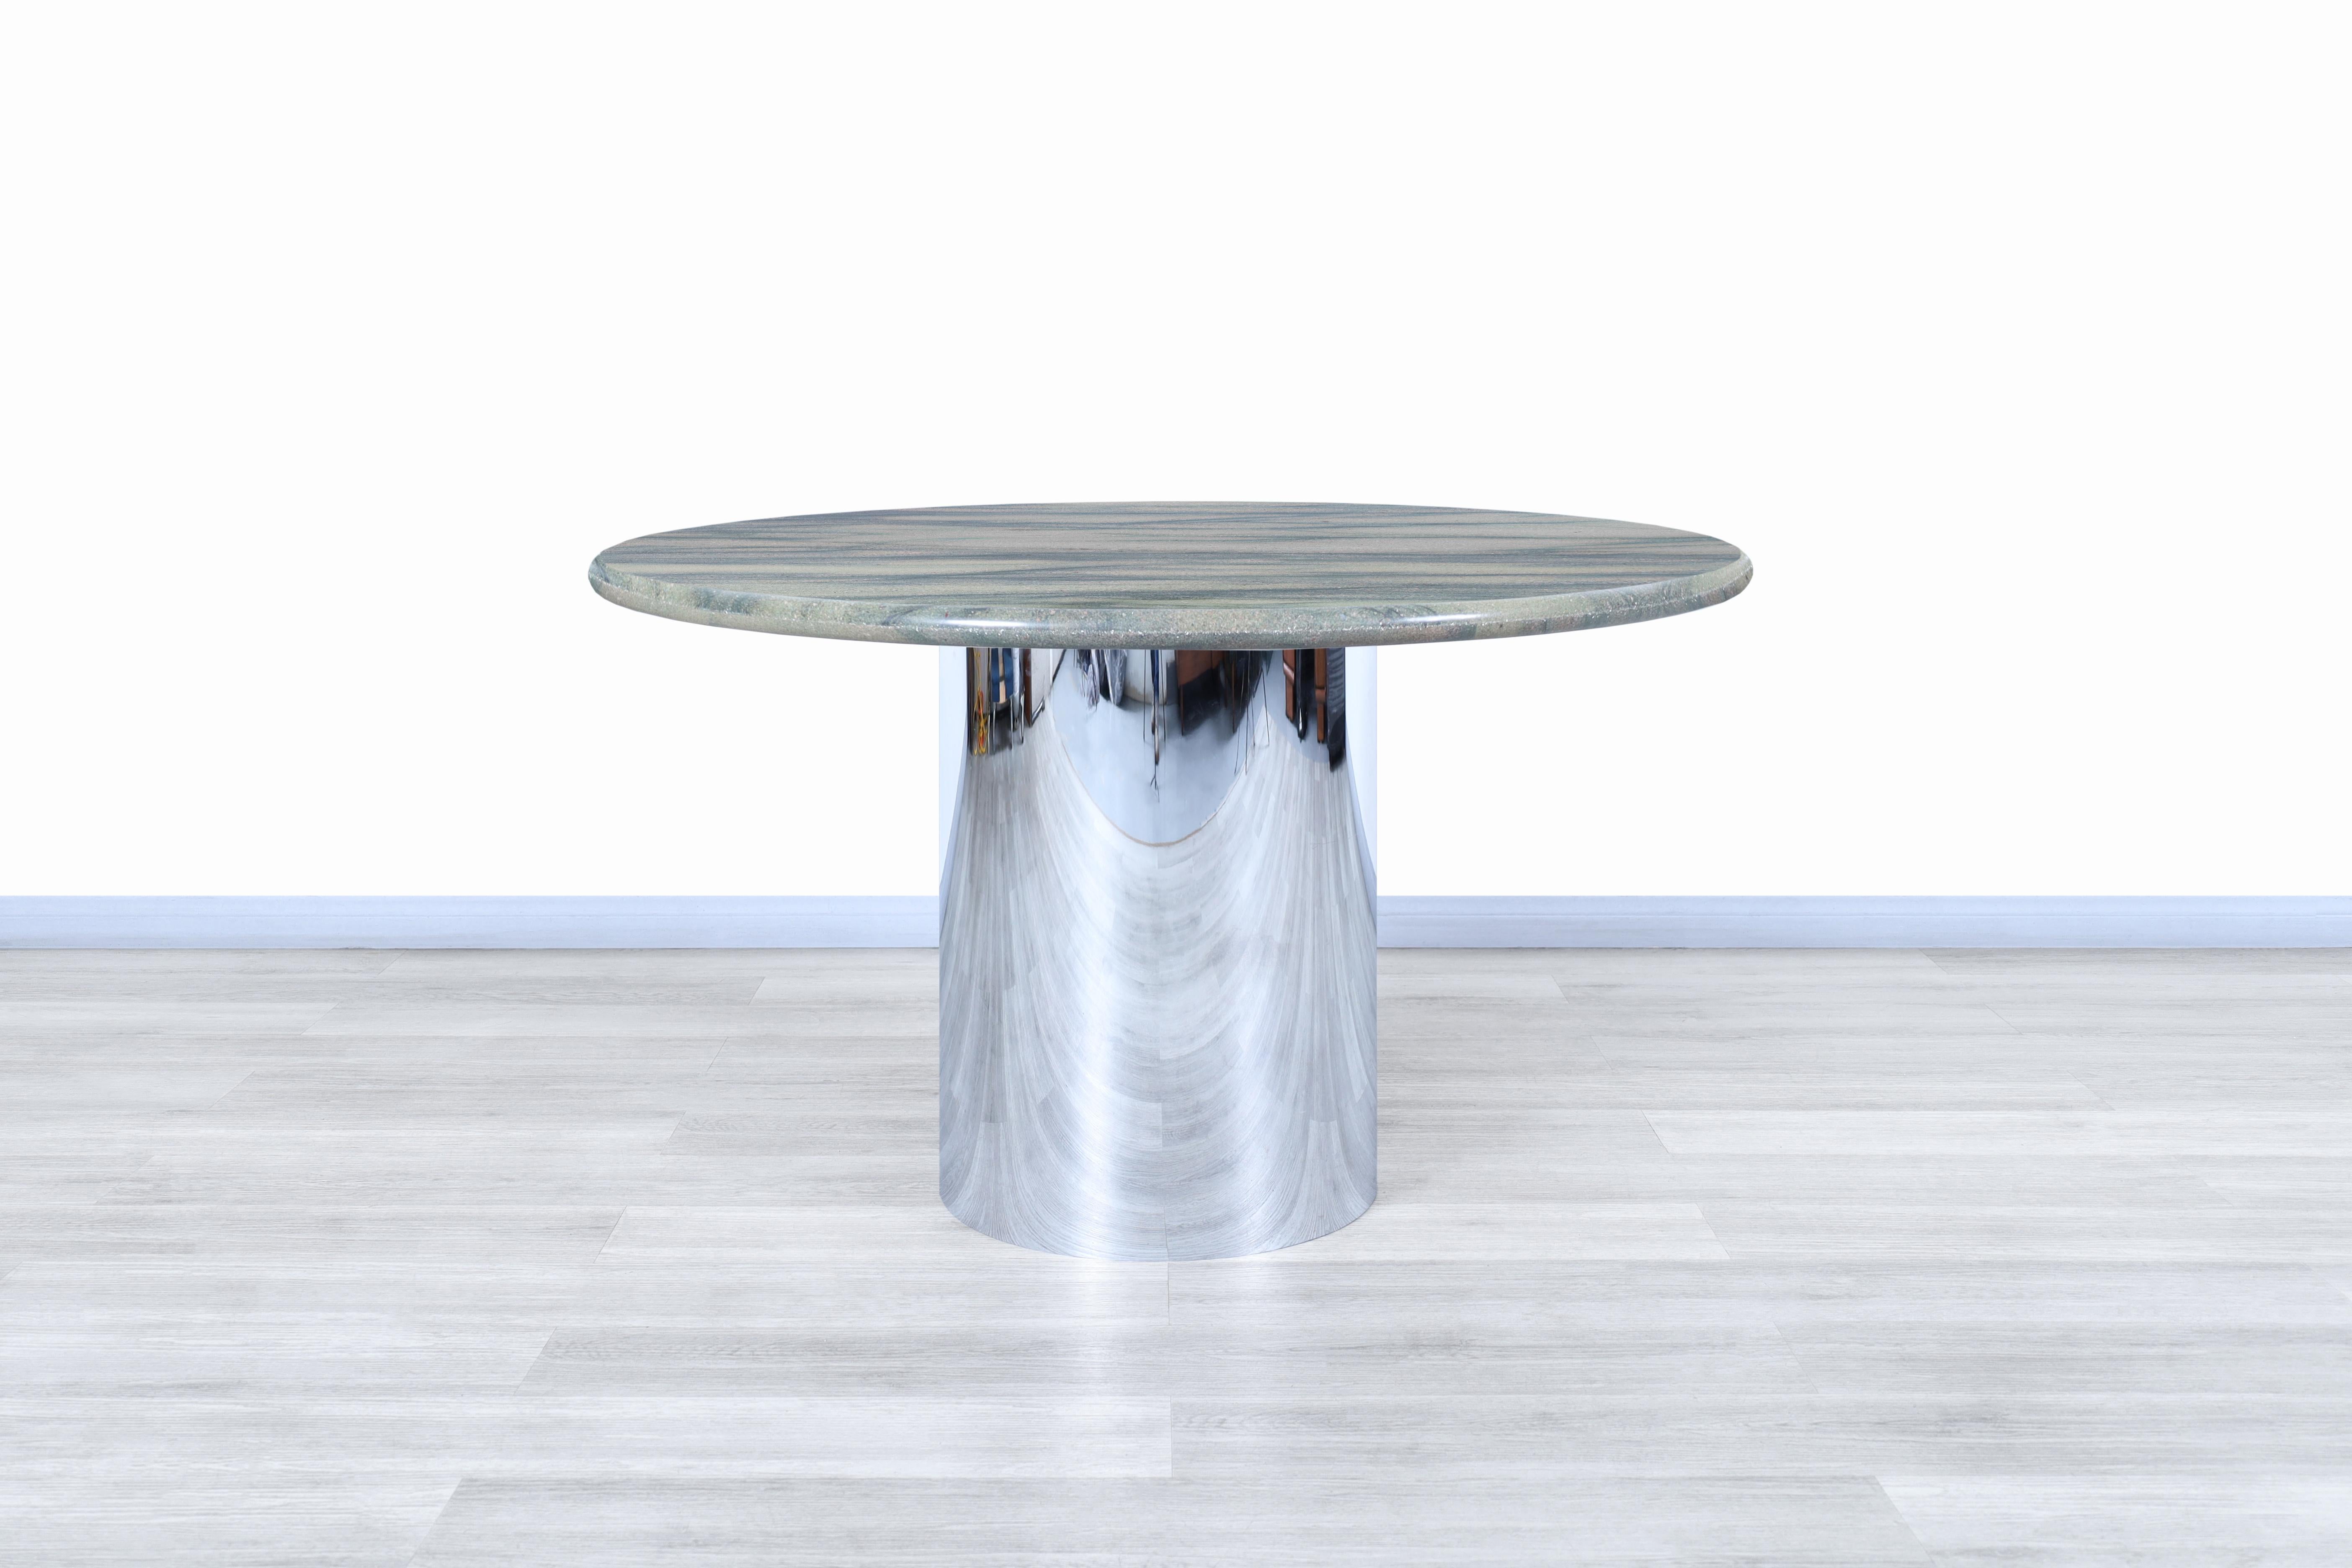 Merveilleuse table ronde vintage en marbre et en acier inoxydable, conçue et fabriquée aux États-Unis, vers les années 1980. Cette table présente un design moderne où le riche veinage distingue la plus haute qualité de marbre utilisée dans la